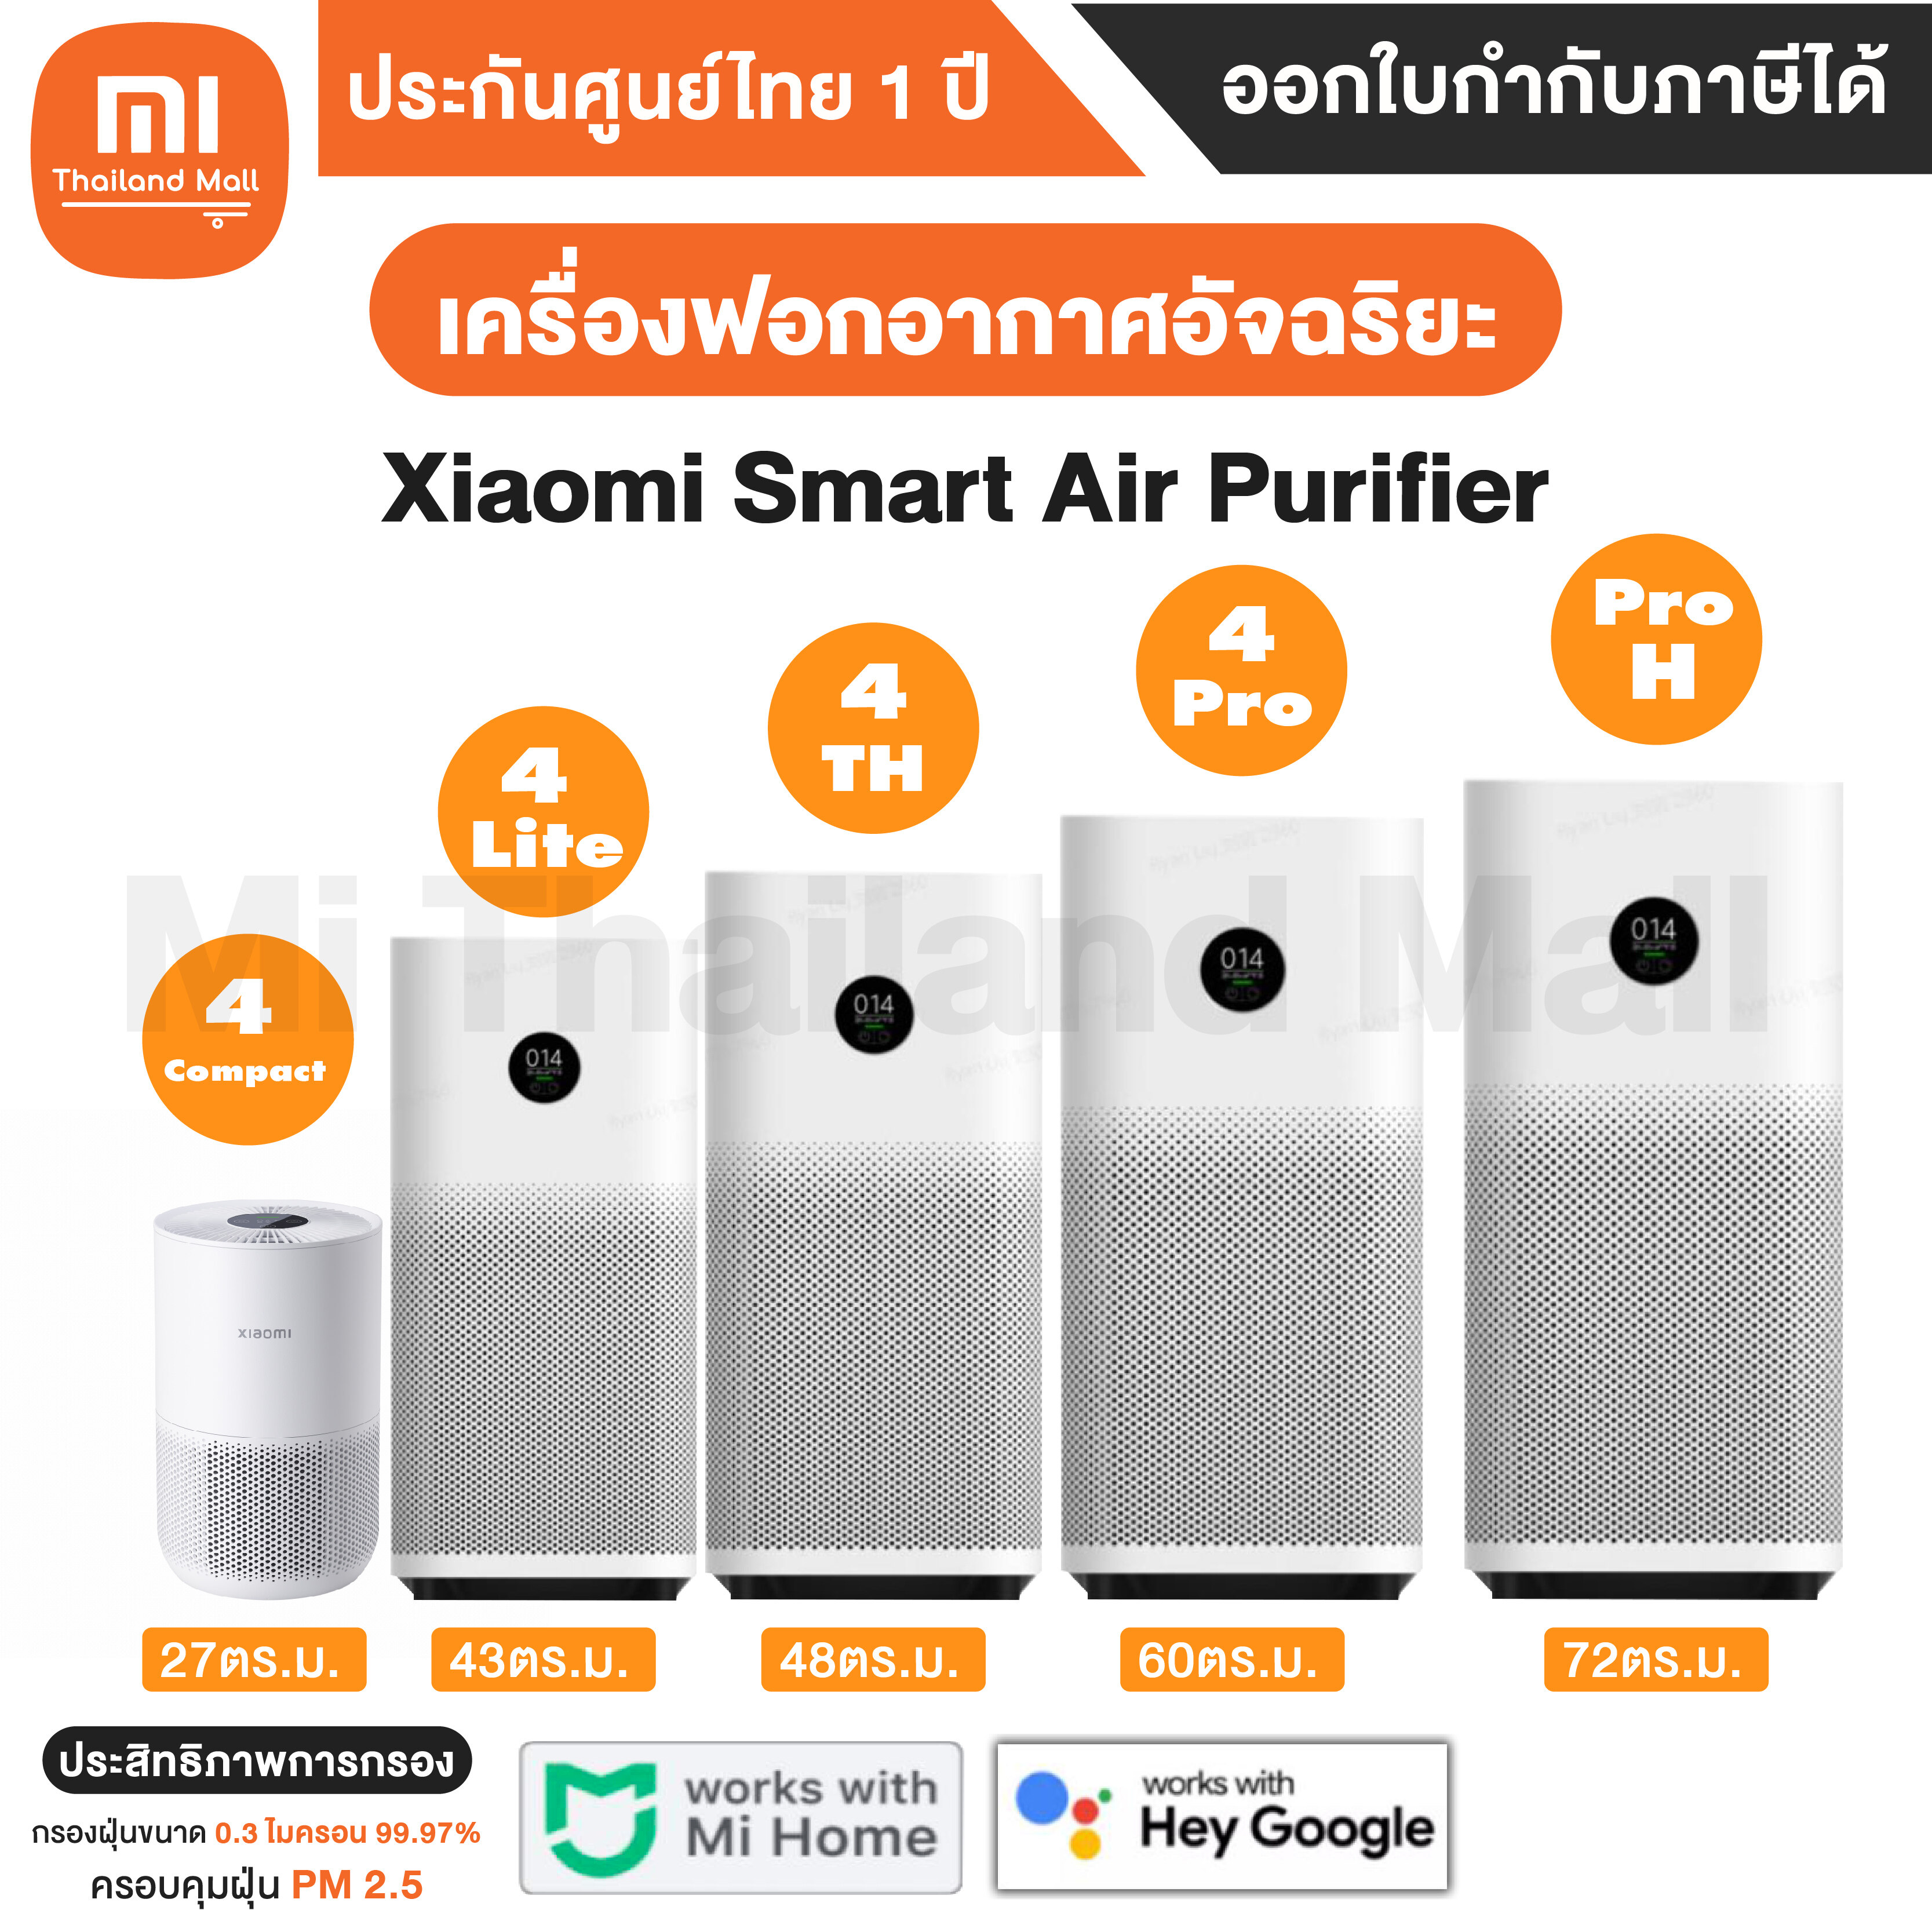 โปรโมชั่น Flash Sale : [พร้อมส่ง] เครื่องฟอกอากาศ Xiaomi Smart Air Purifier 4 รุ่น 4 Lite / 4 TH / 4 Pro / Pro H / 4 Compact - ประกันศูนย์ Xiaomi ไทย 1ปี